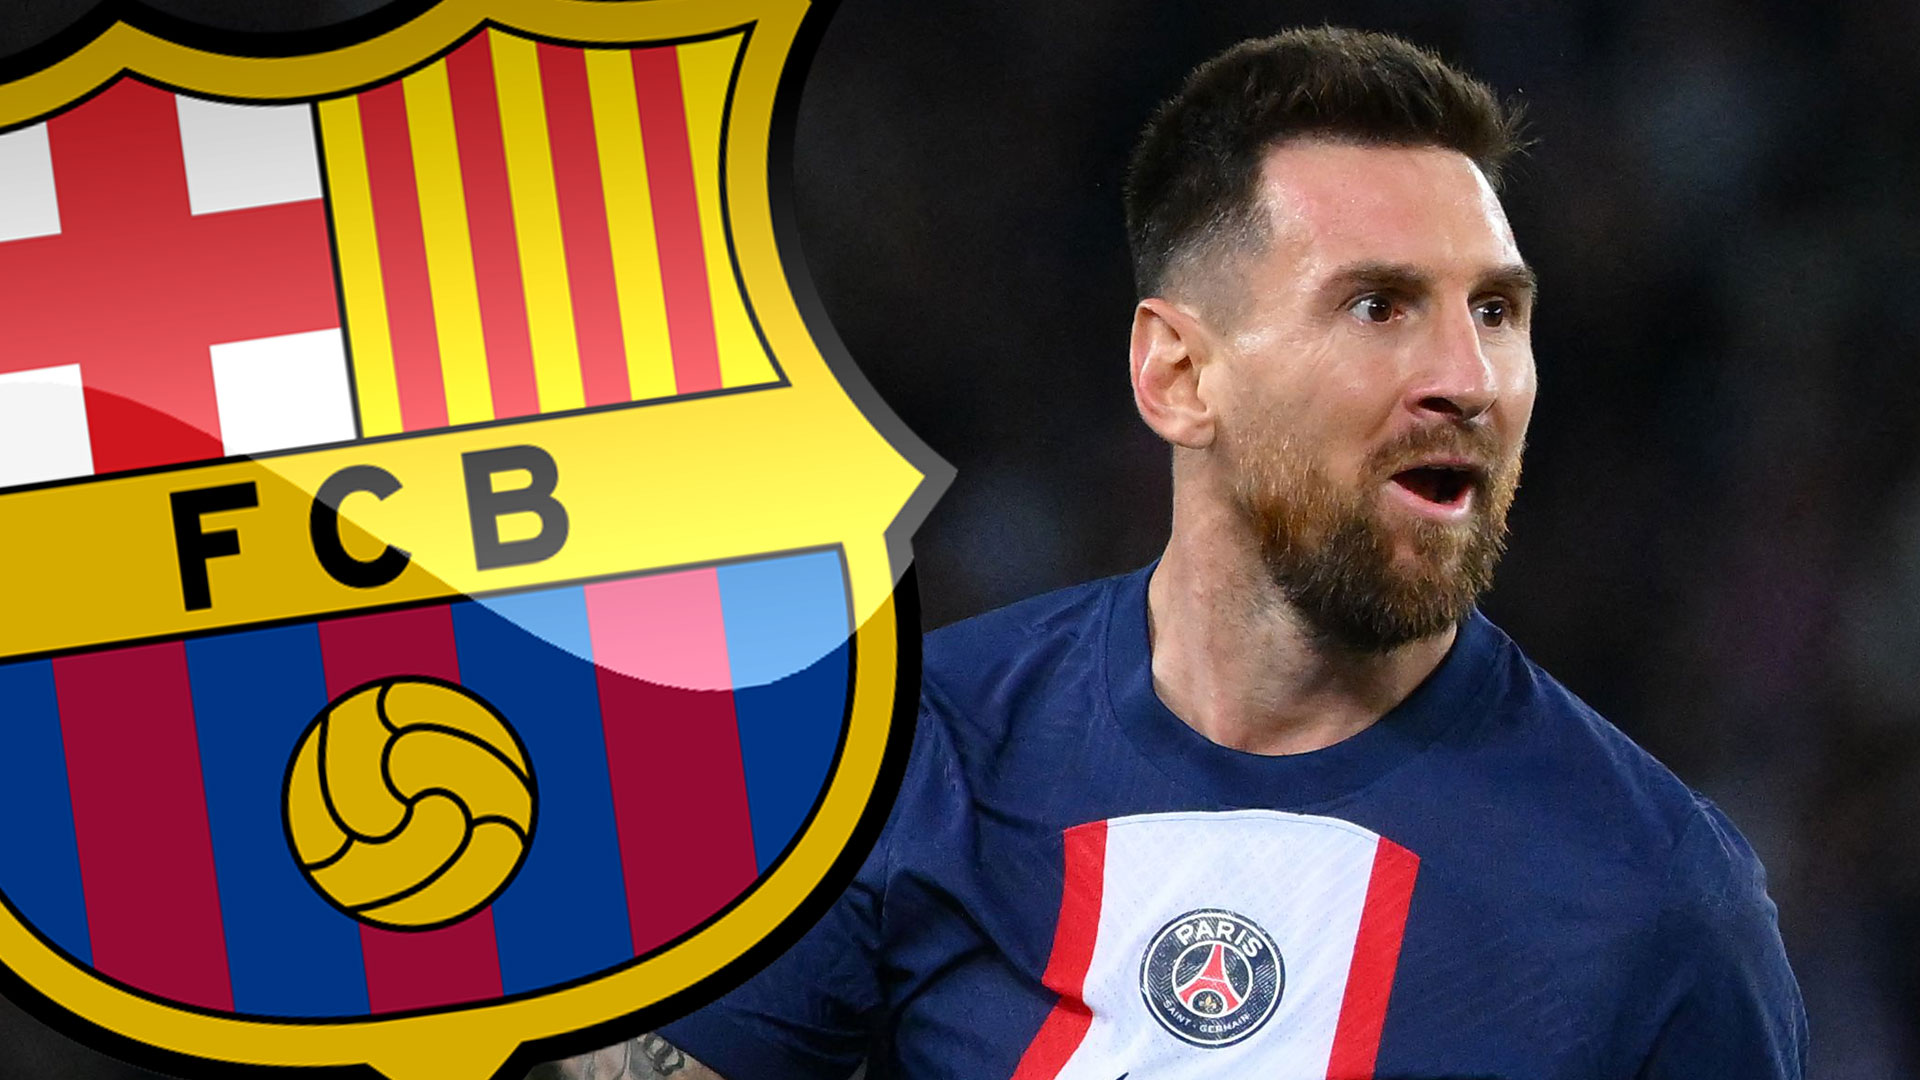 Messi shkon në finalen e Katar 2022, FIFA i mbush 'xhepat' Barçës  